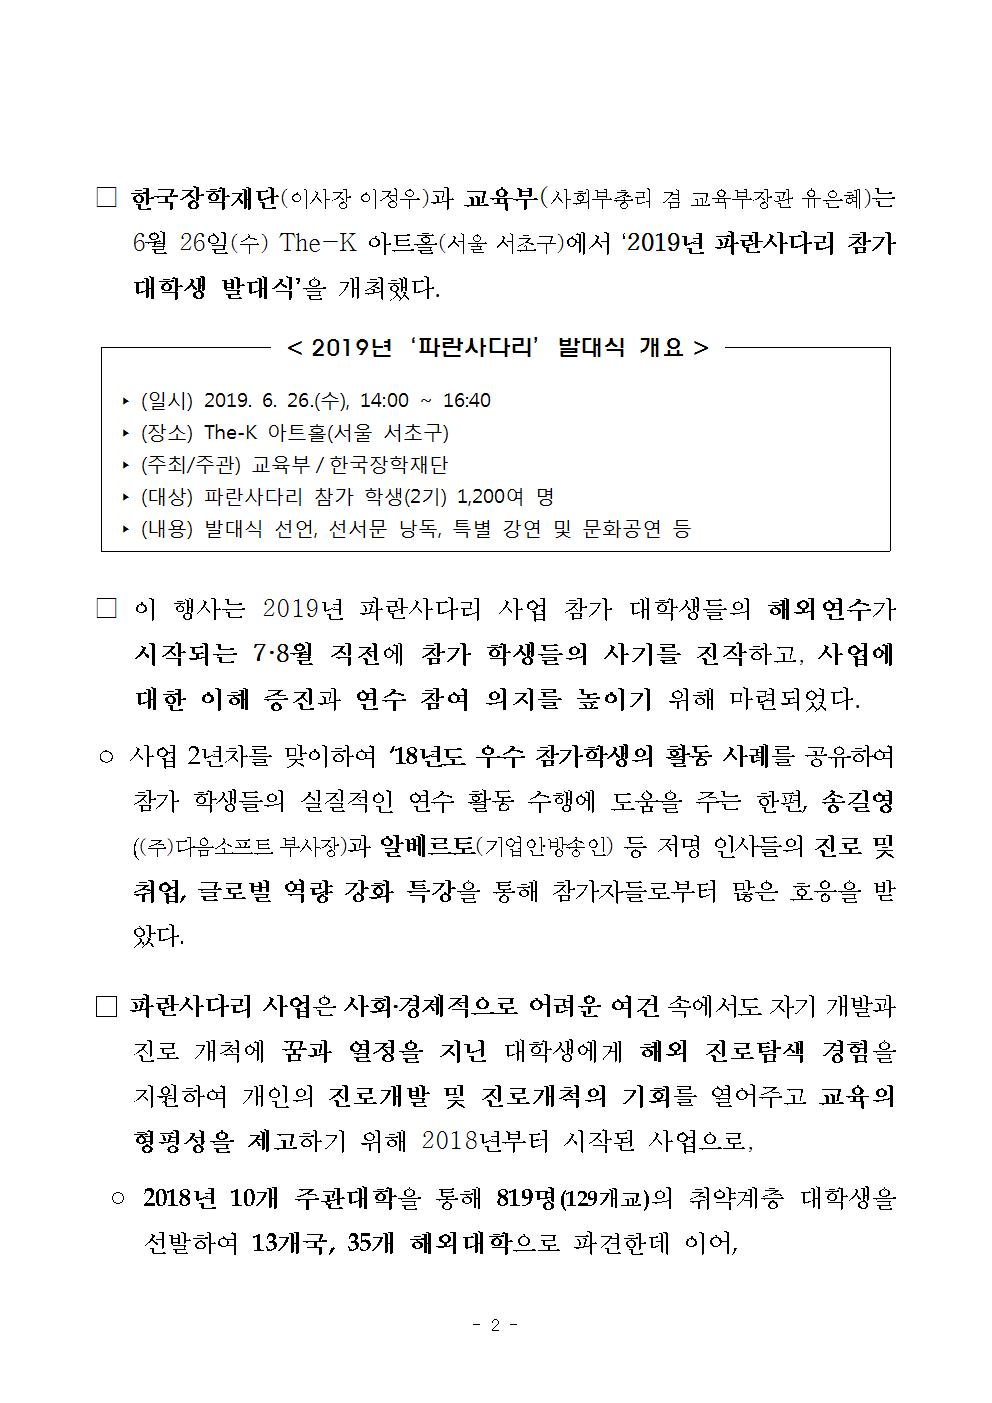 06-27(목)[보도자료] 2019년「파란사다리」사업 참가 대학생 발대식 개최002.jpg